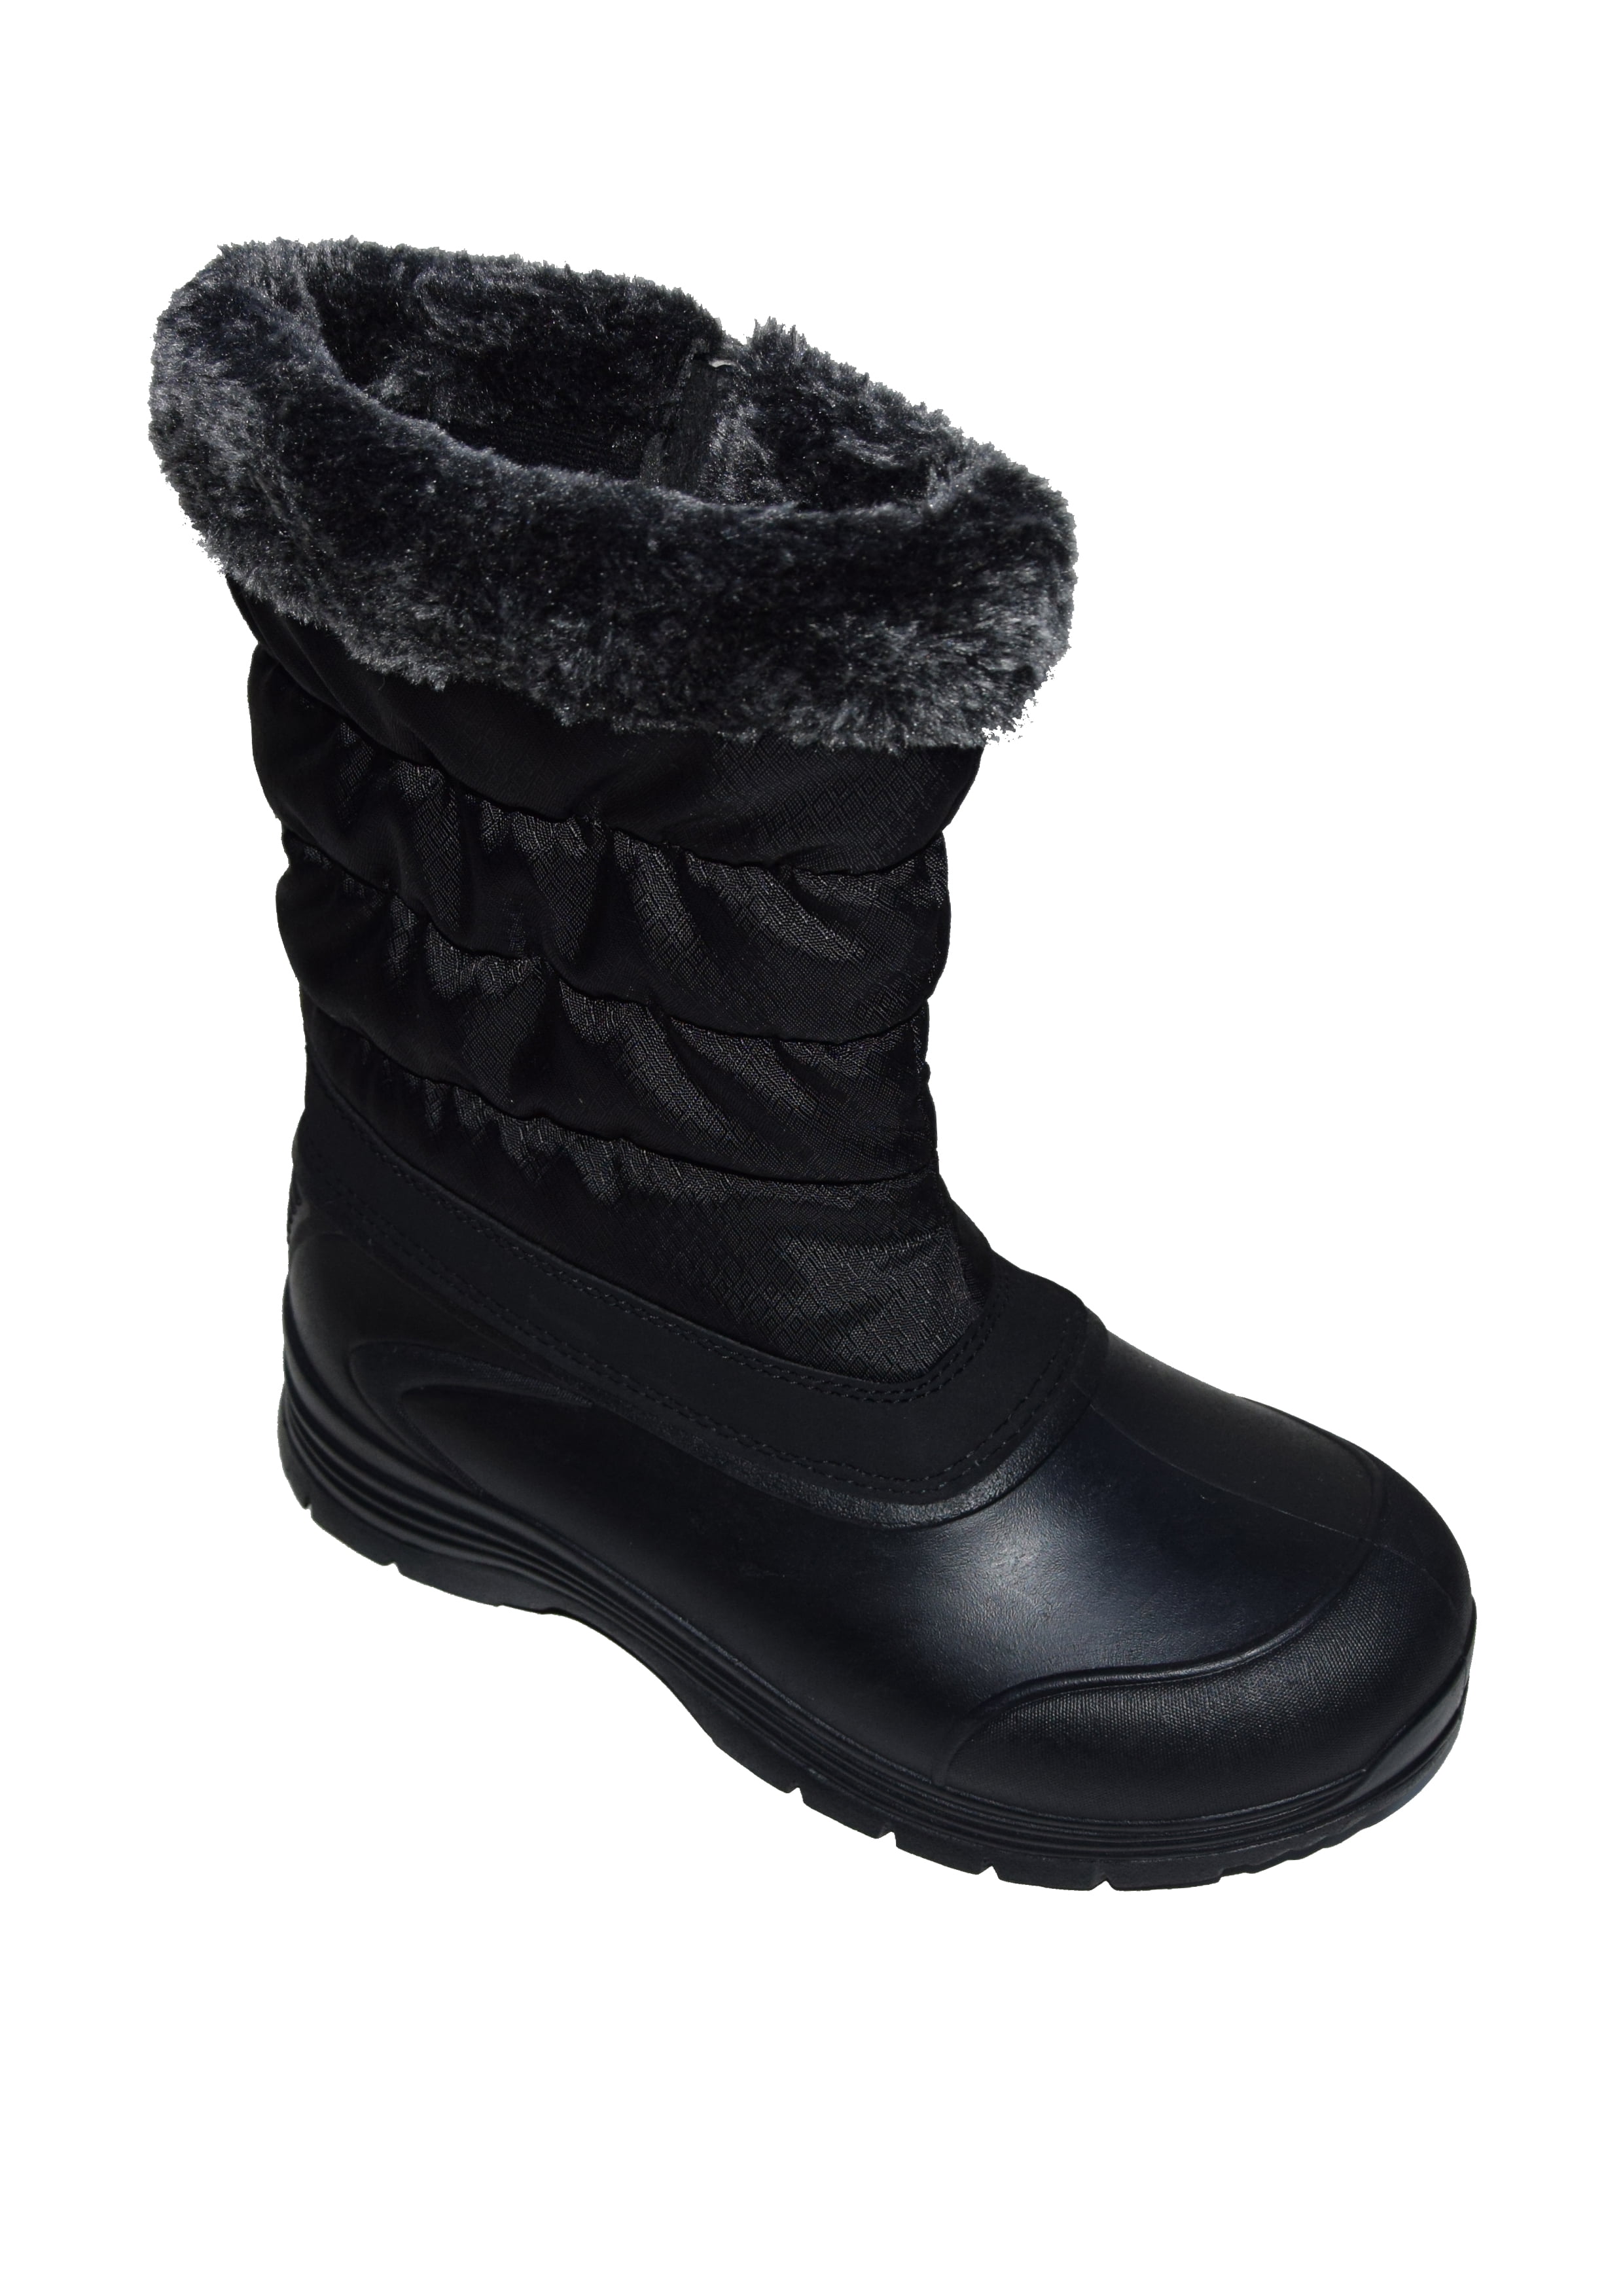 walmart winter boots